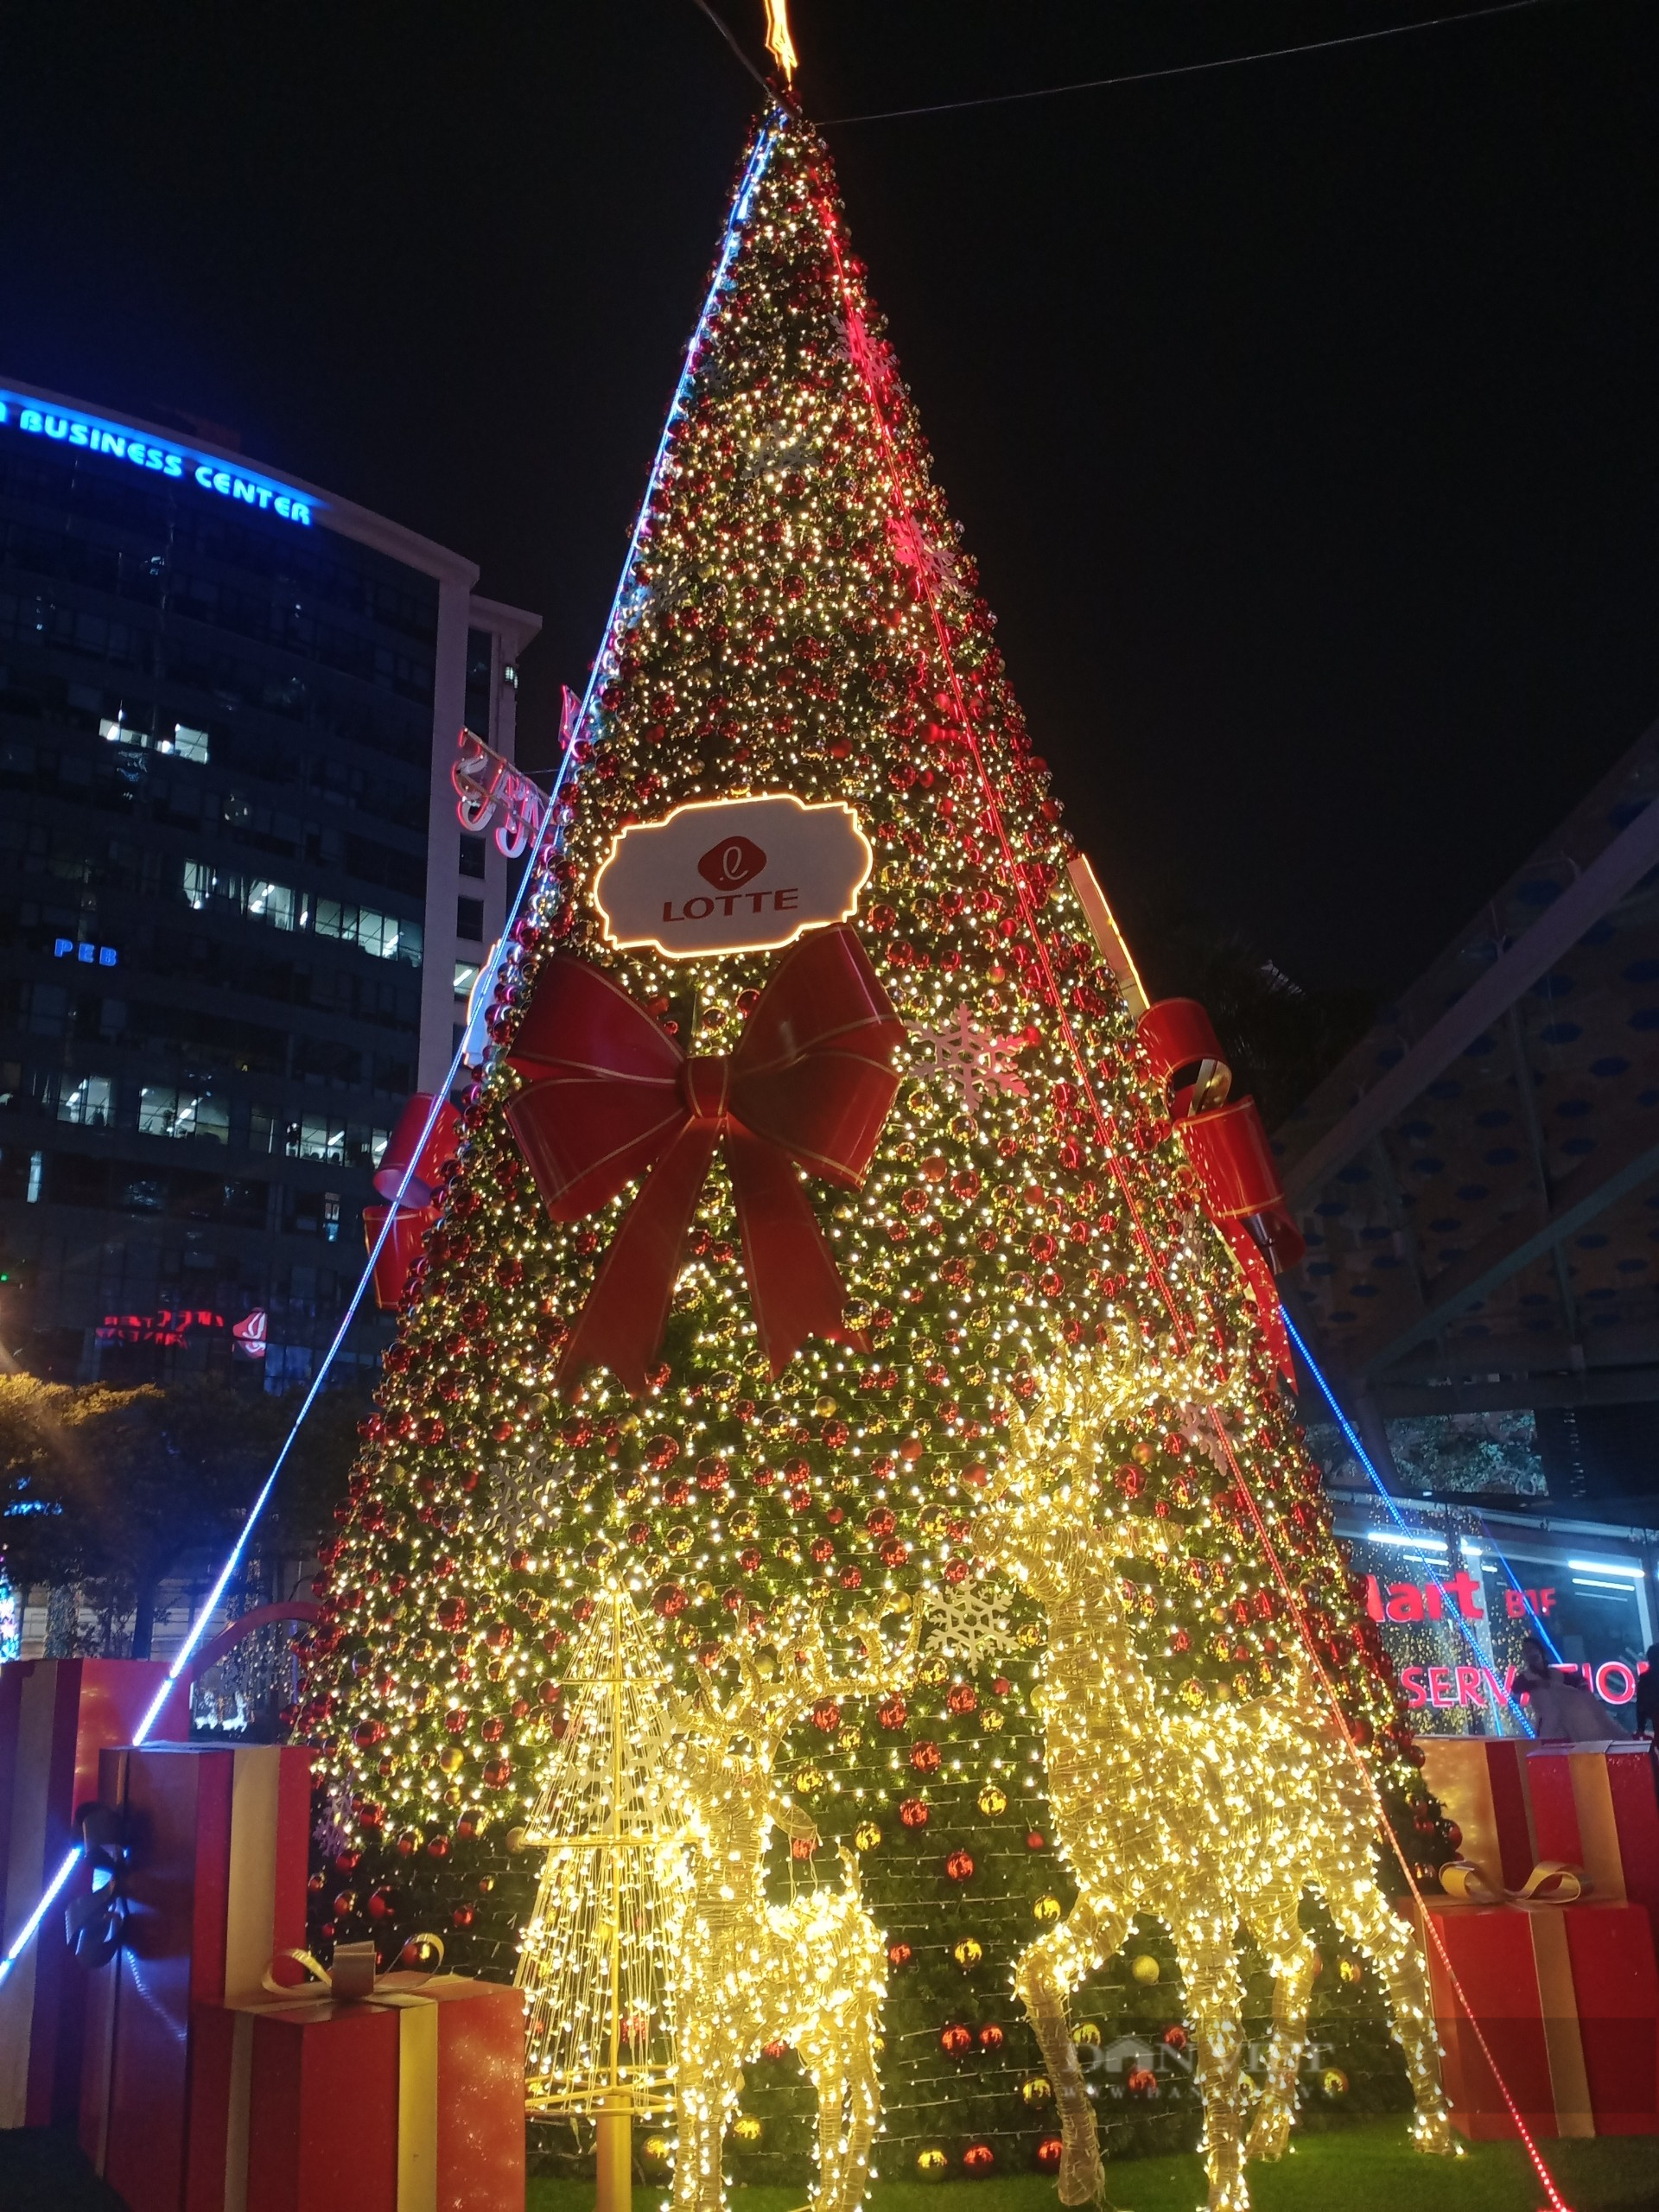 Không gian Noel tại Hà Nội đang rực rỡ với những ánh đèn và trang trí đầy màu sắc. Hãy cùng ngắm nhìn những bức ảnh Noel Hà Nội để cảm nhận được không khí đón Giáng sinh năm nay nhé.